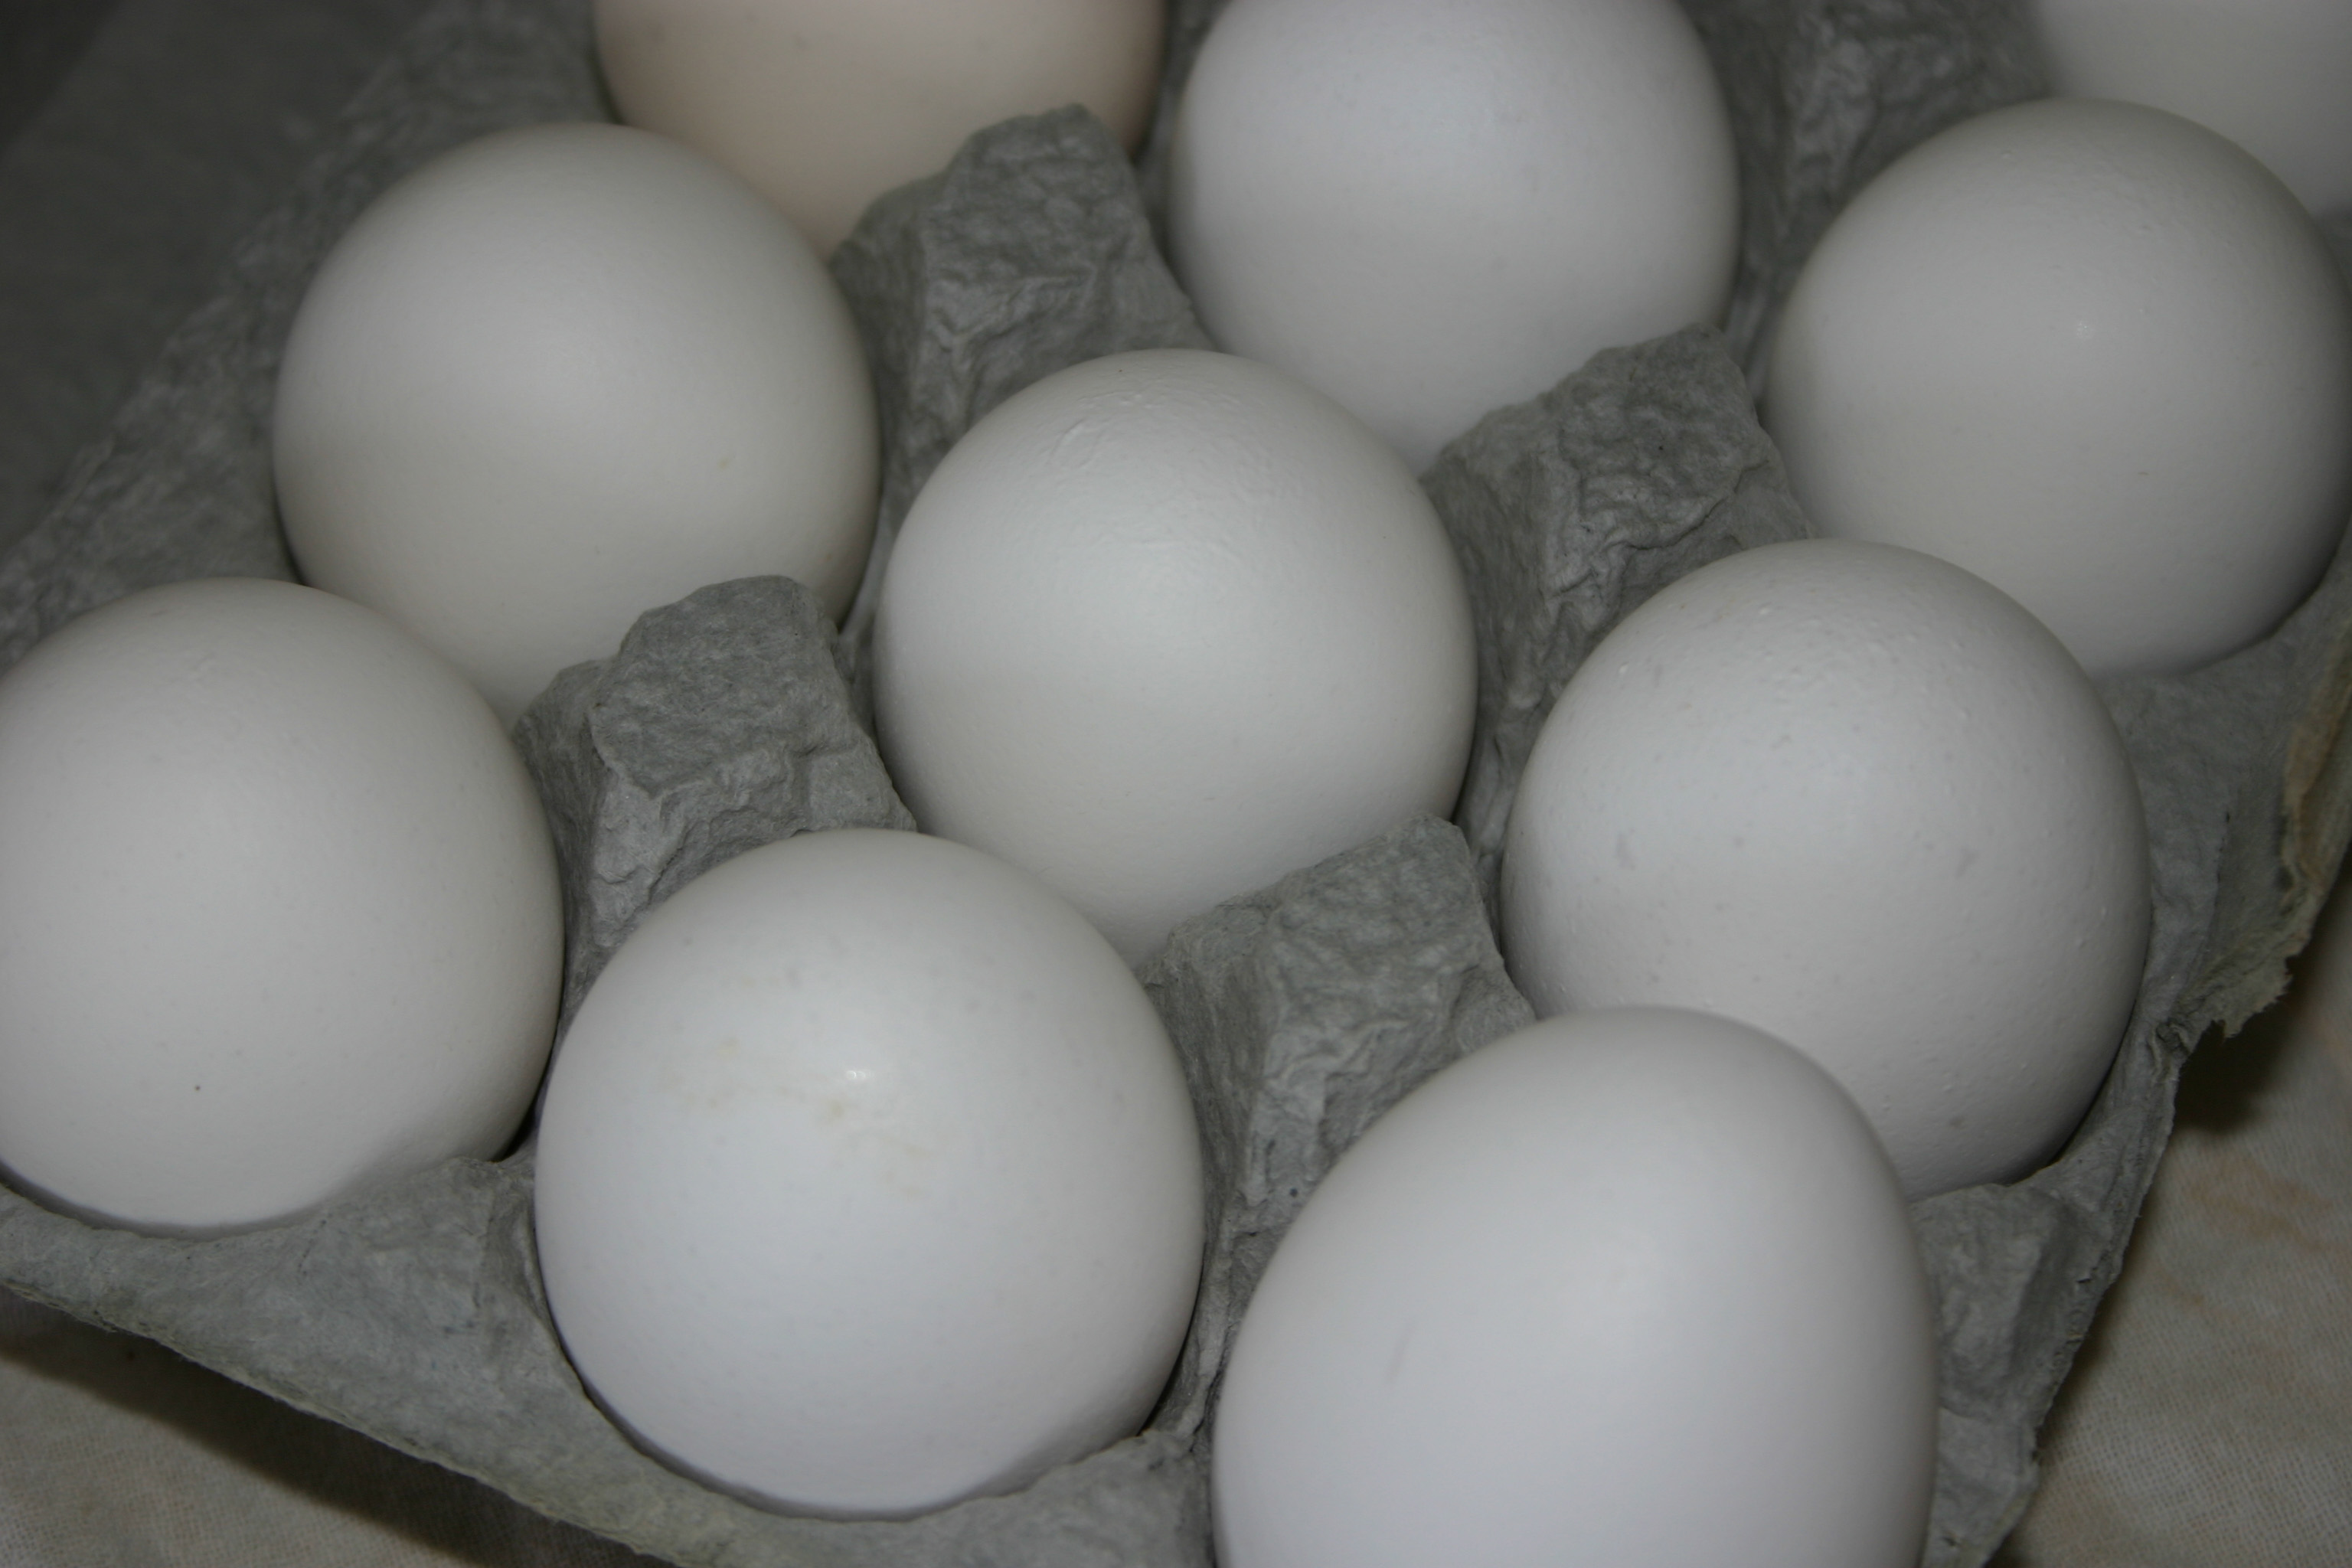 امارات واردات ماکیان و تخم مرغ از فیلپین را ممنوع کرد